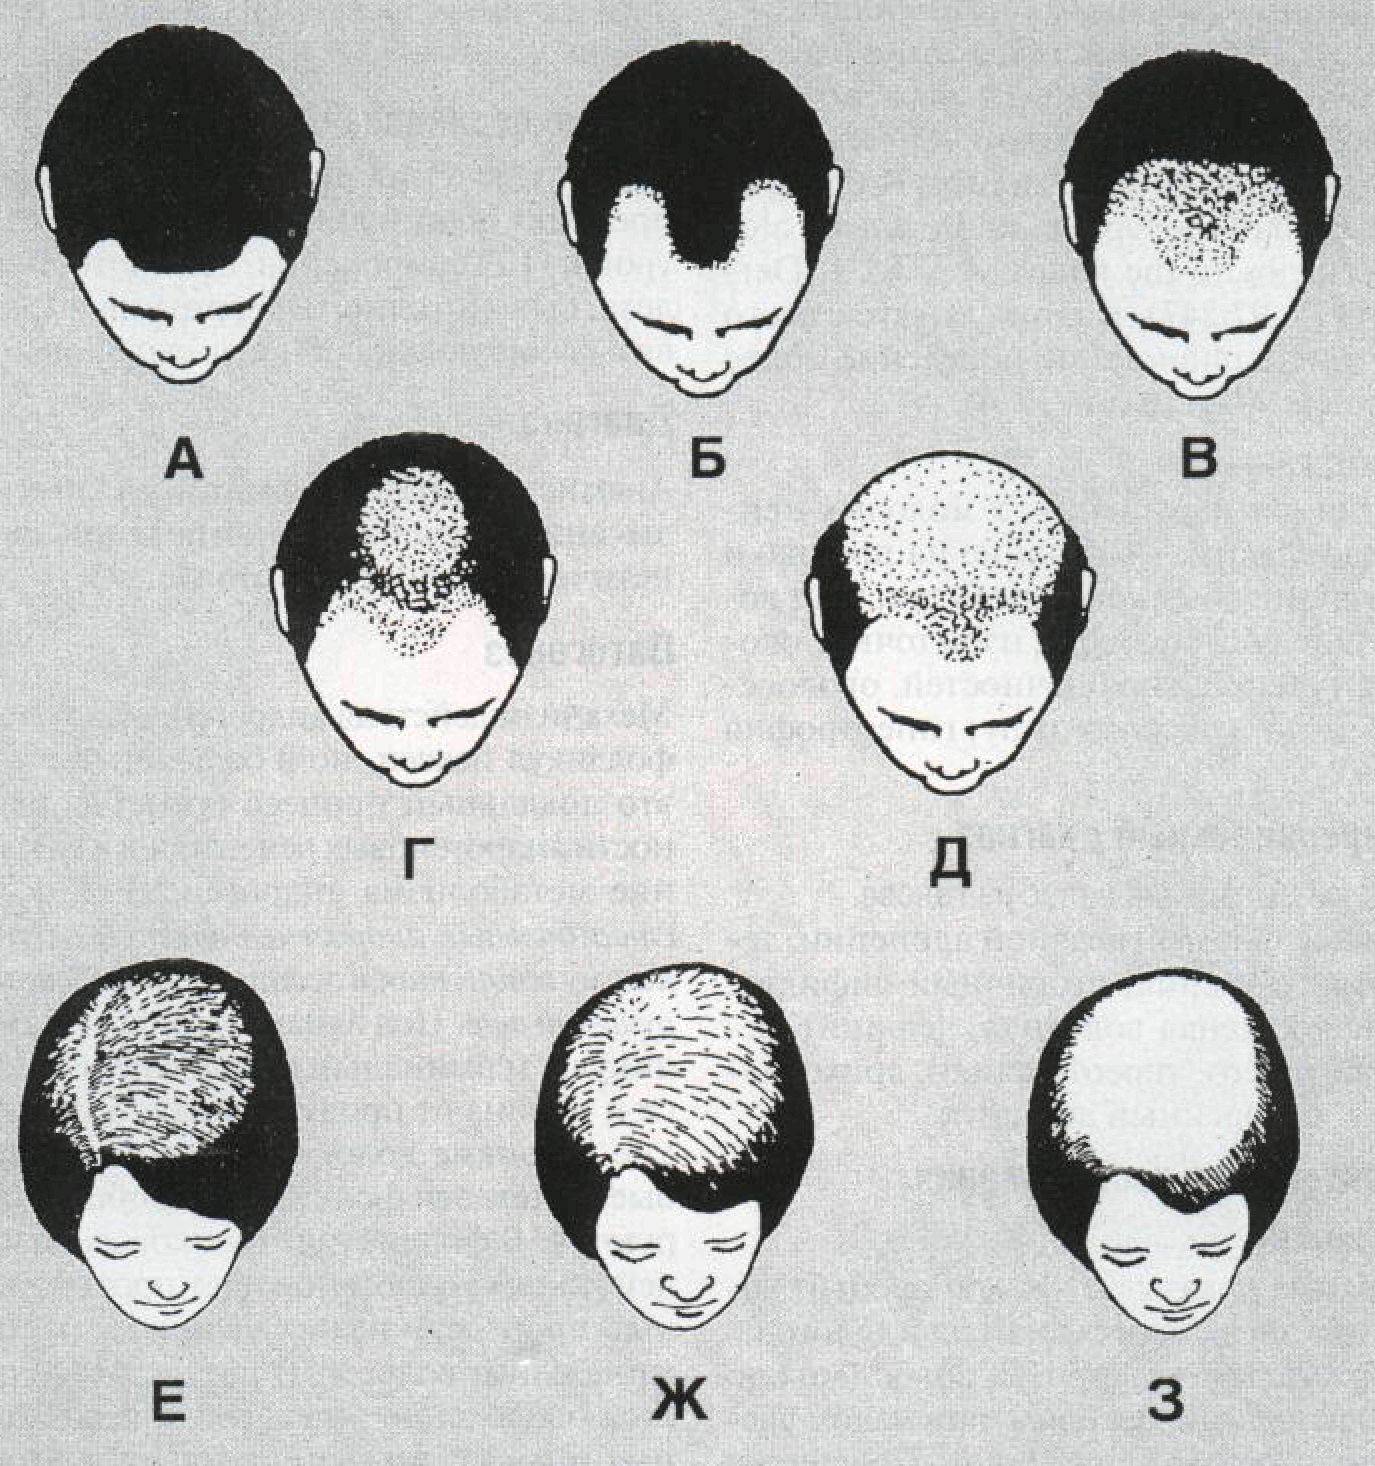 Округлая форма головы